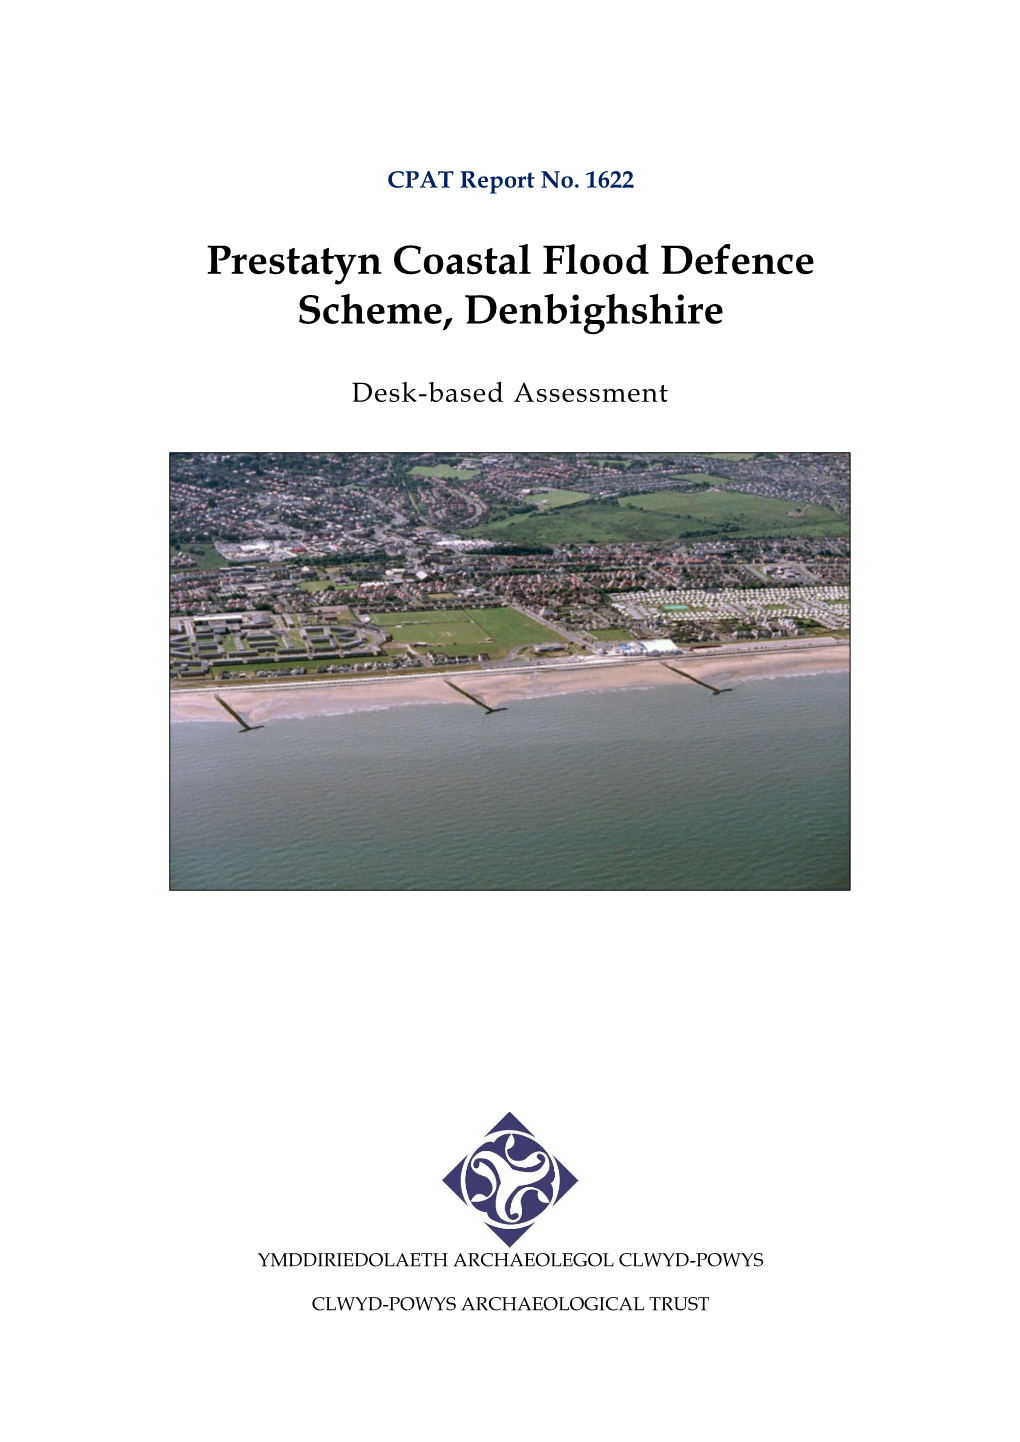 Prestatyn Coastal Flood Defence Scheme, Denbighshire